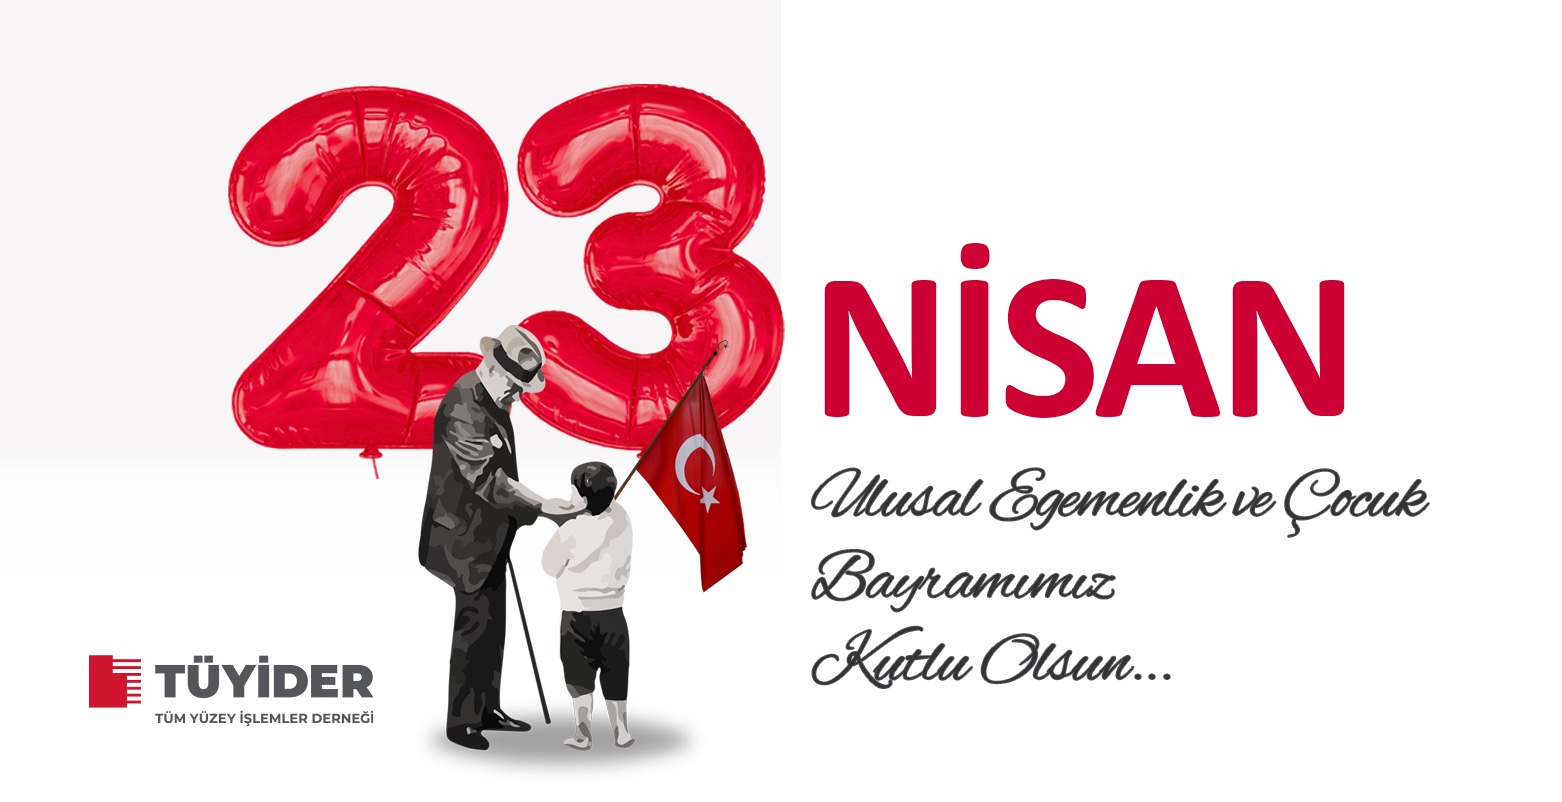 23 Nisan Ulusal Egemenlik ve Çocuk Bayramımız Kutlu Olsun